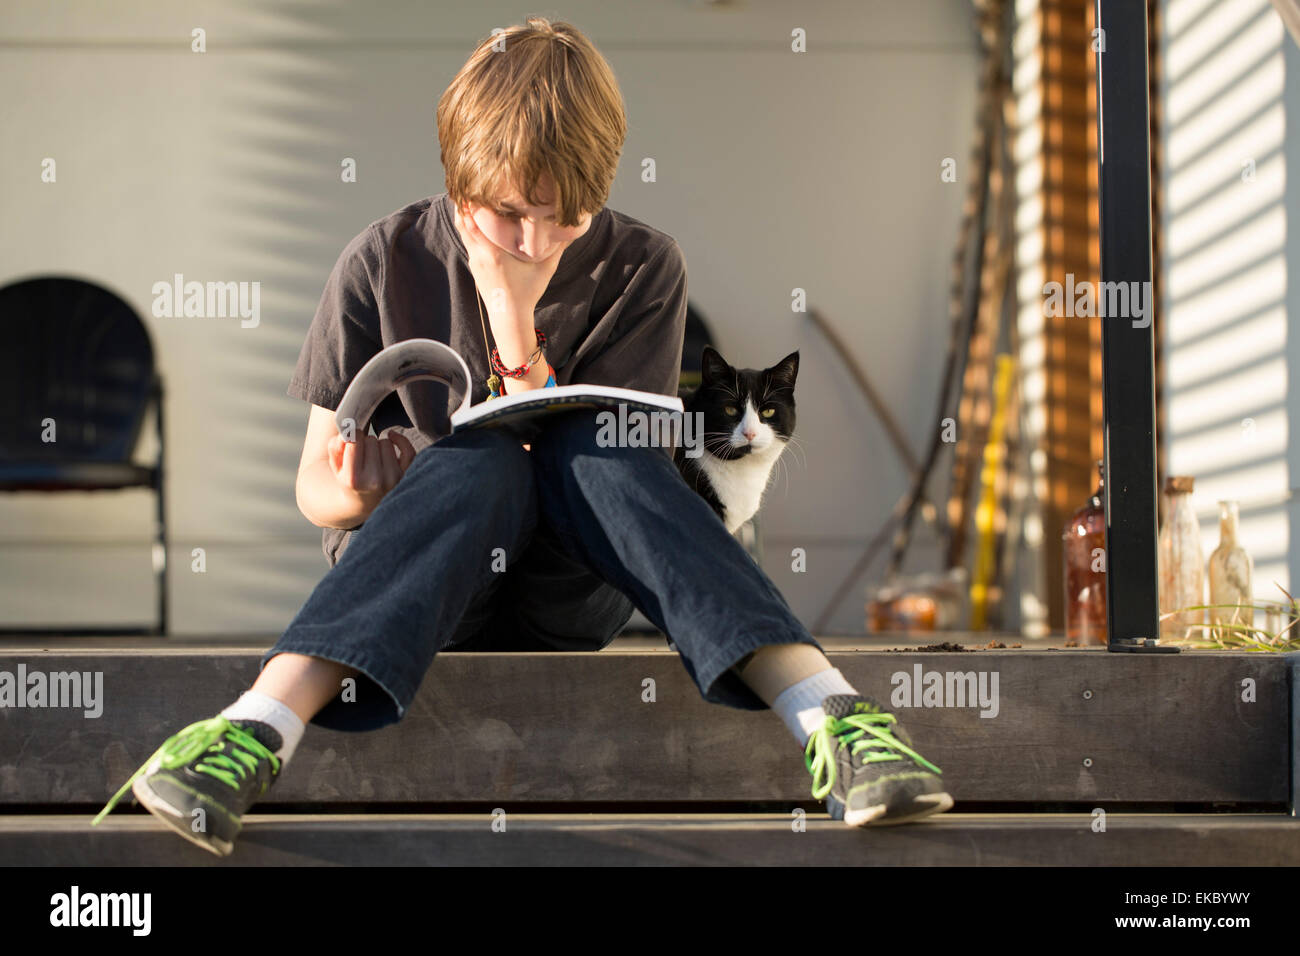 Junge sitzt auf Schritt Lesebuch, Katze peering von hinten Stockfoto